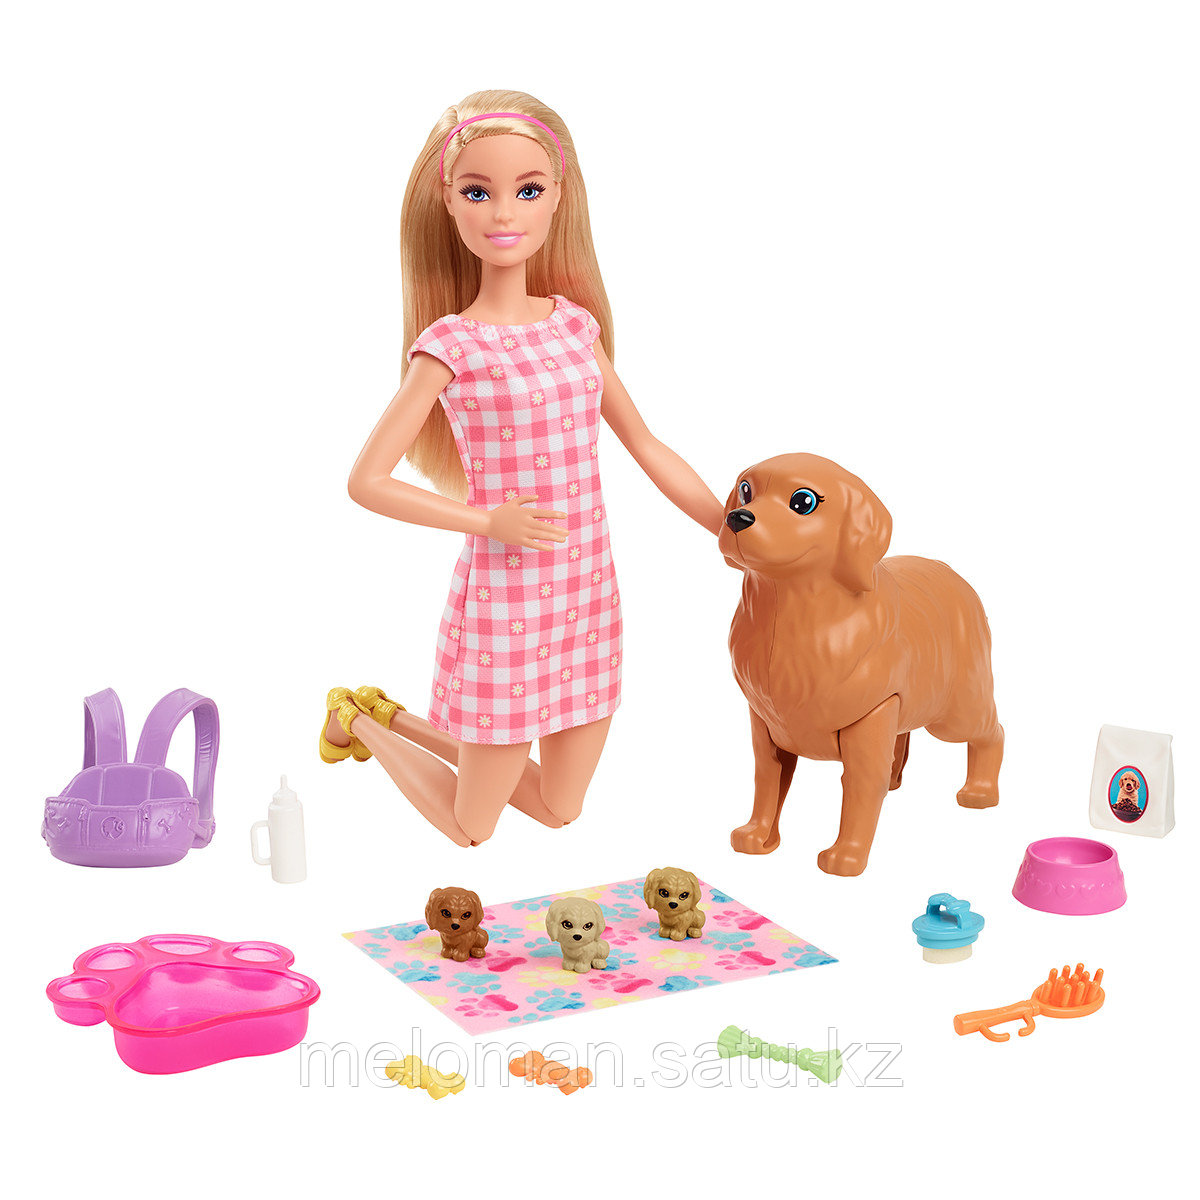 Barbie: Игр.н-р Barbie "Уход за новорожденными питомцами"